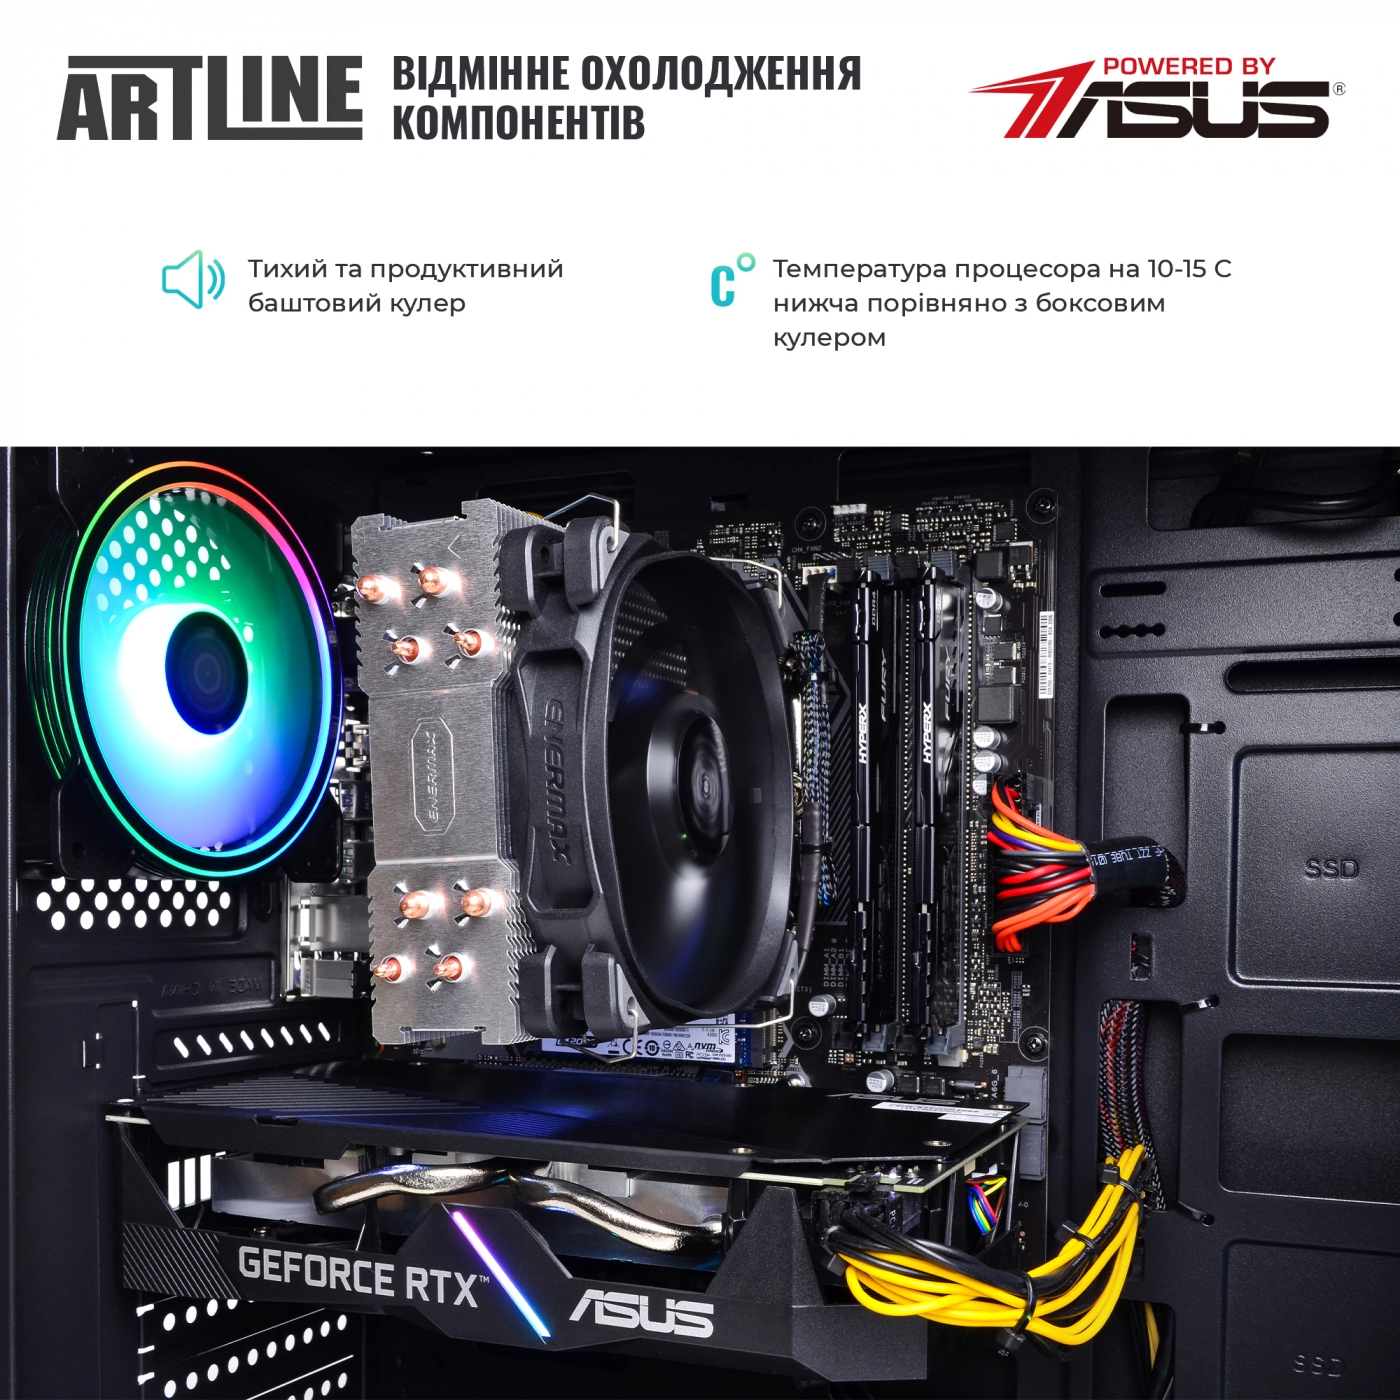 Купить Компьютер ARTLINE Gaming X73v30 - фото 7